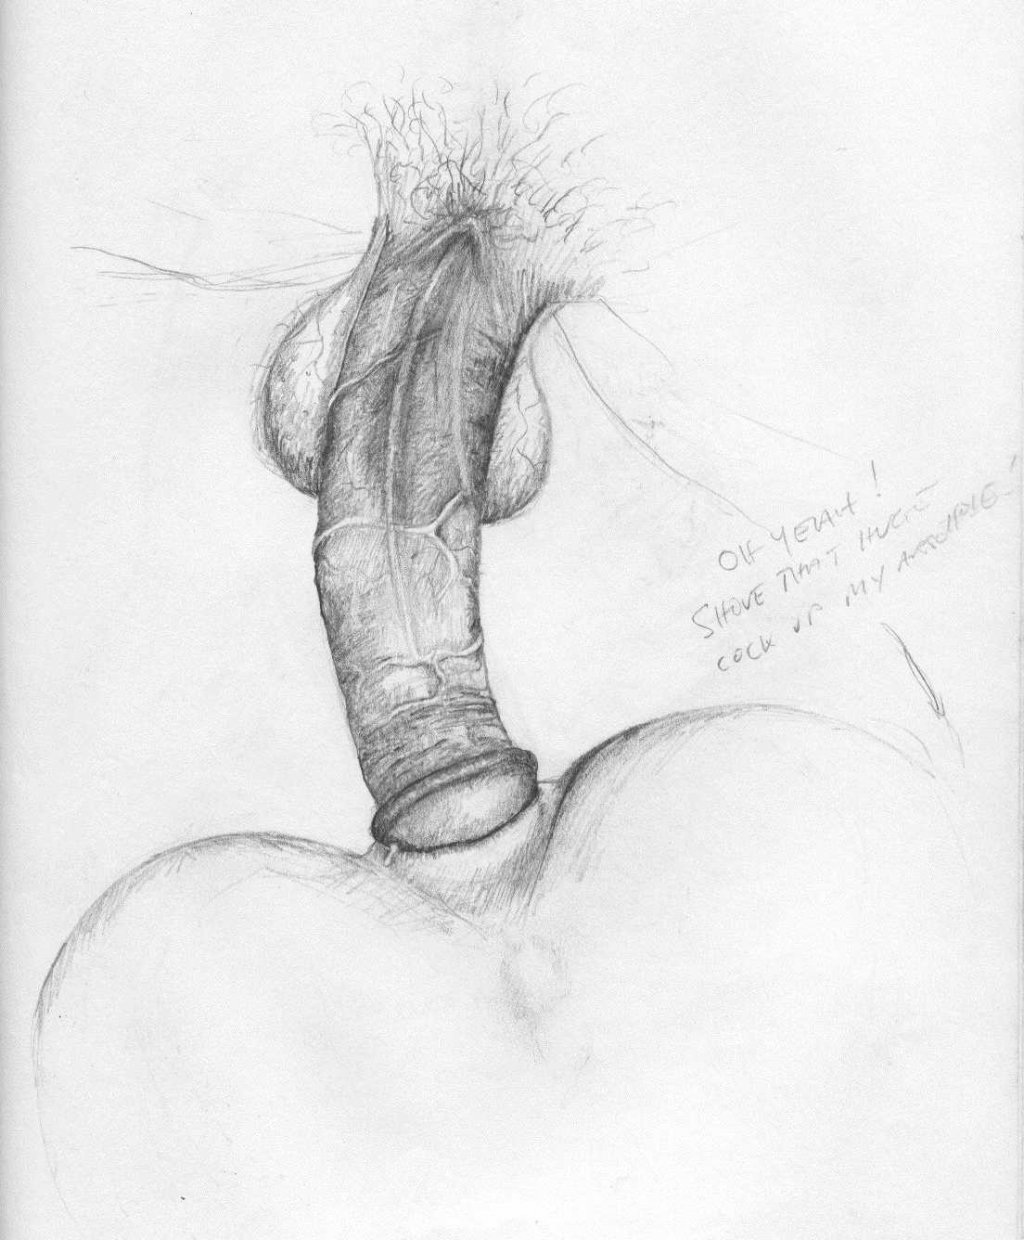 Porn Penis Drawings - So Nice - Erotic Art - Literotica.com. 